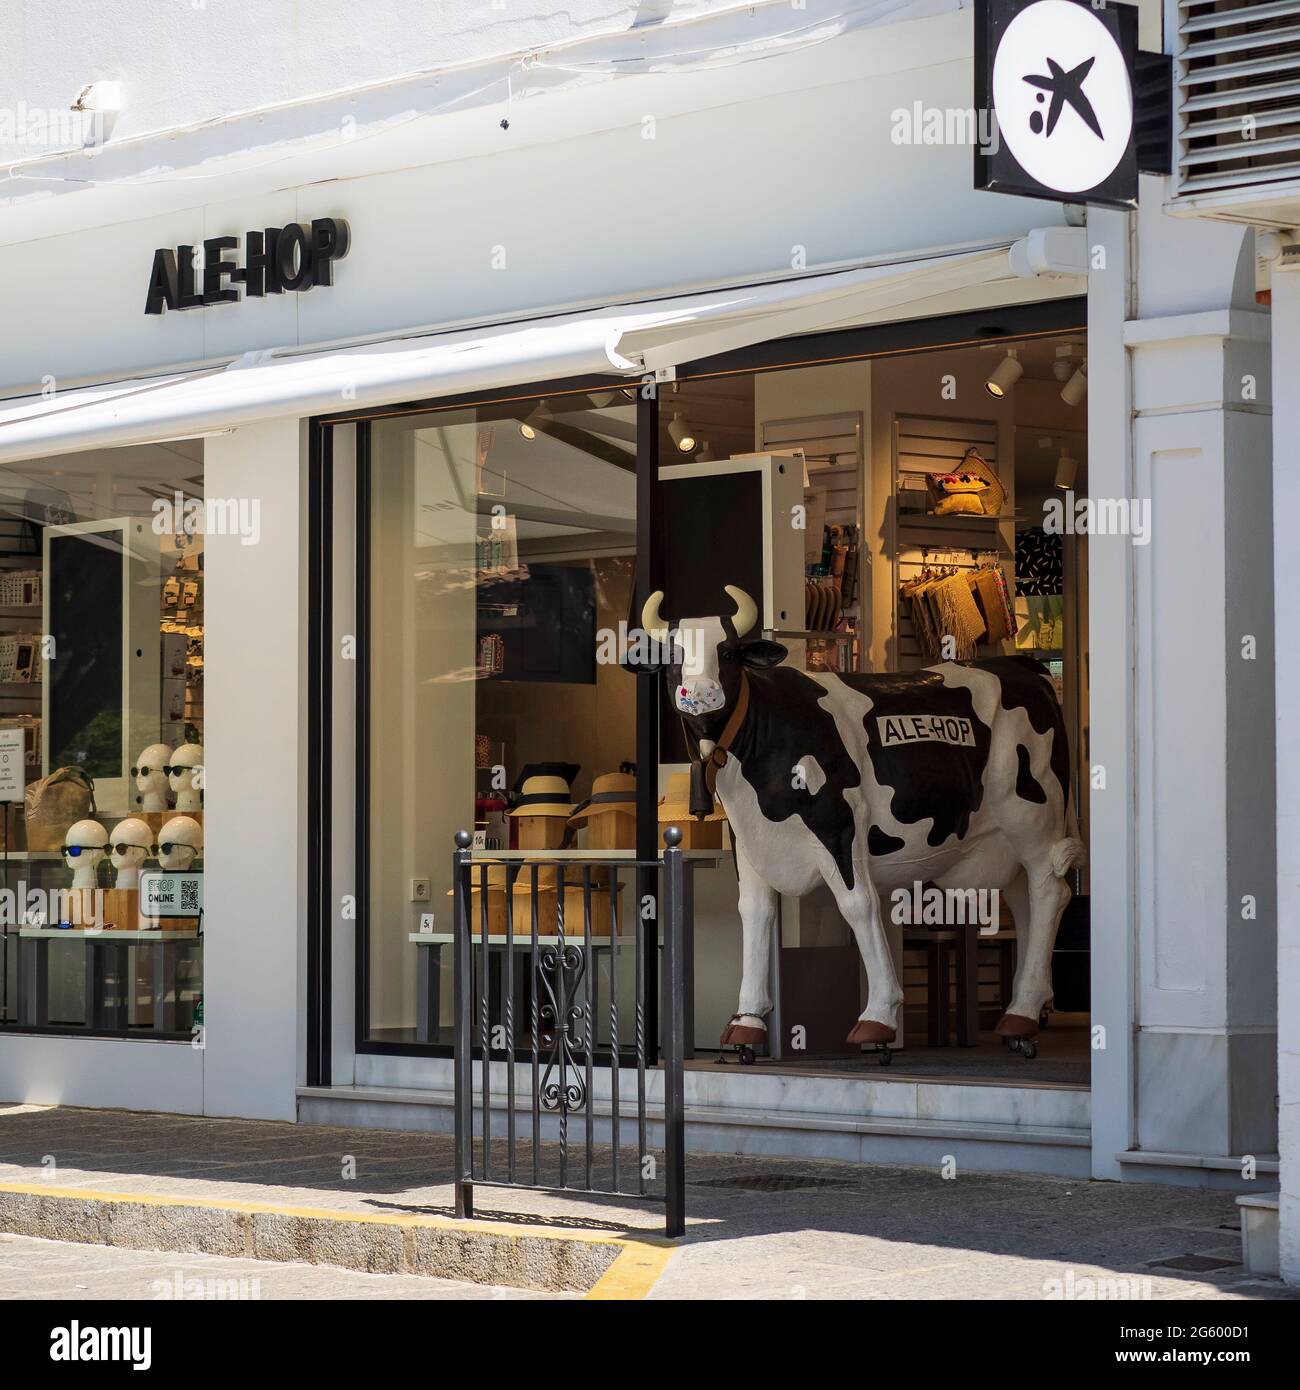 Mijas, Malaga, Spagna. 05/06/2021. façade della porta d'ingresso del negozio Haleop senza acquirenti nella città di Mijas, Malaga, Spagna. Foto Stock